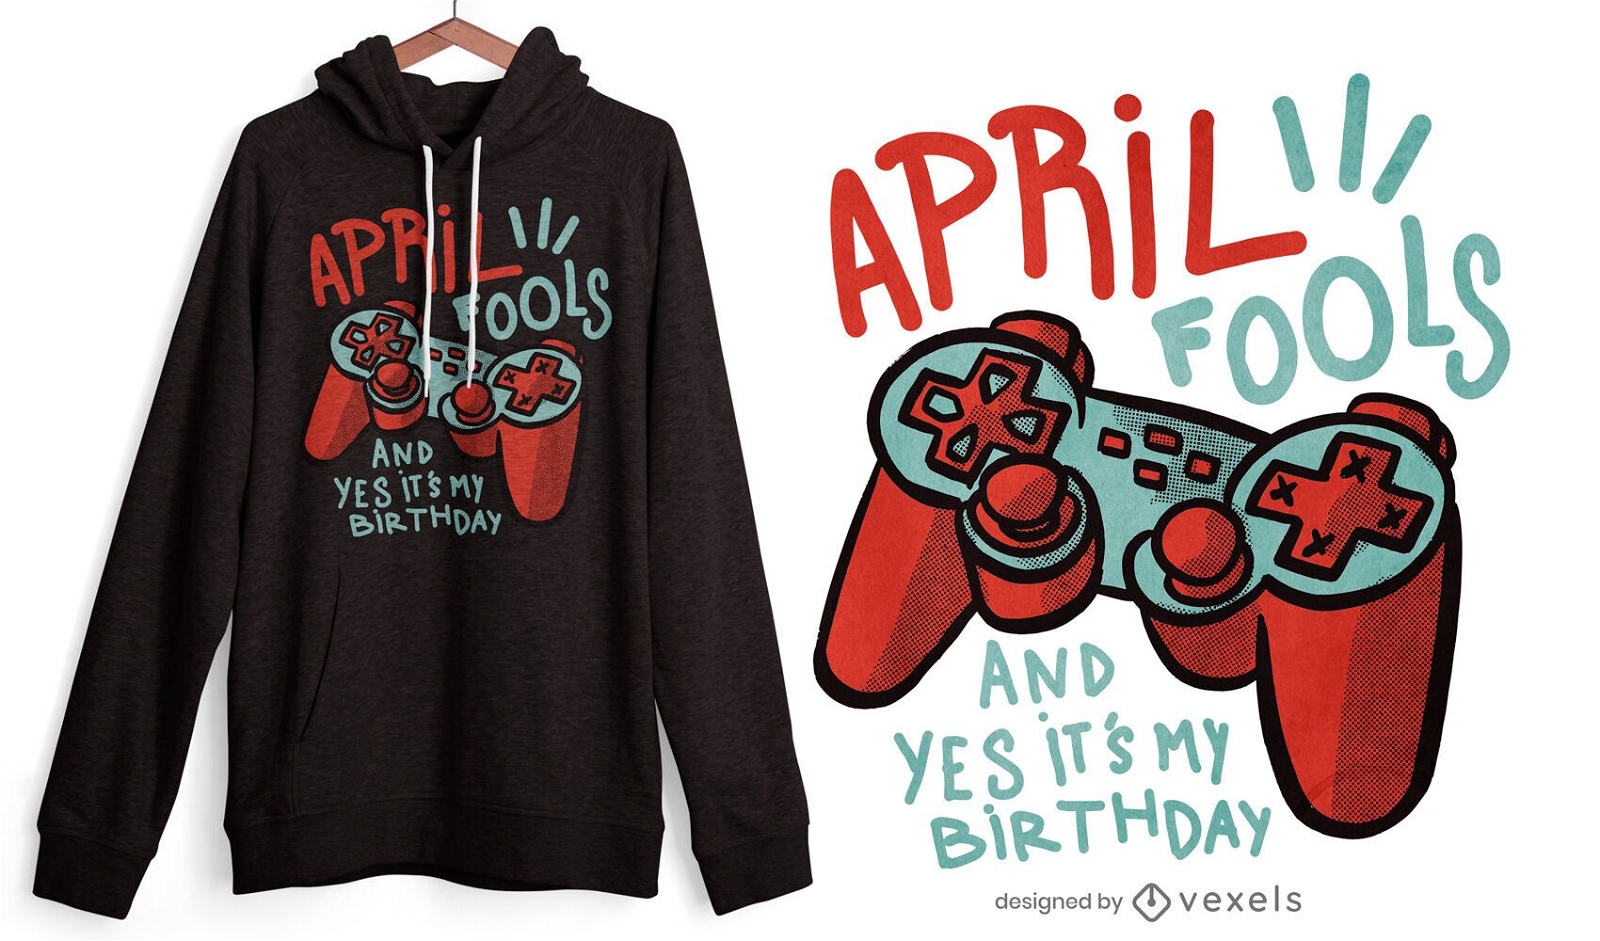 April fools quote t-shirt design